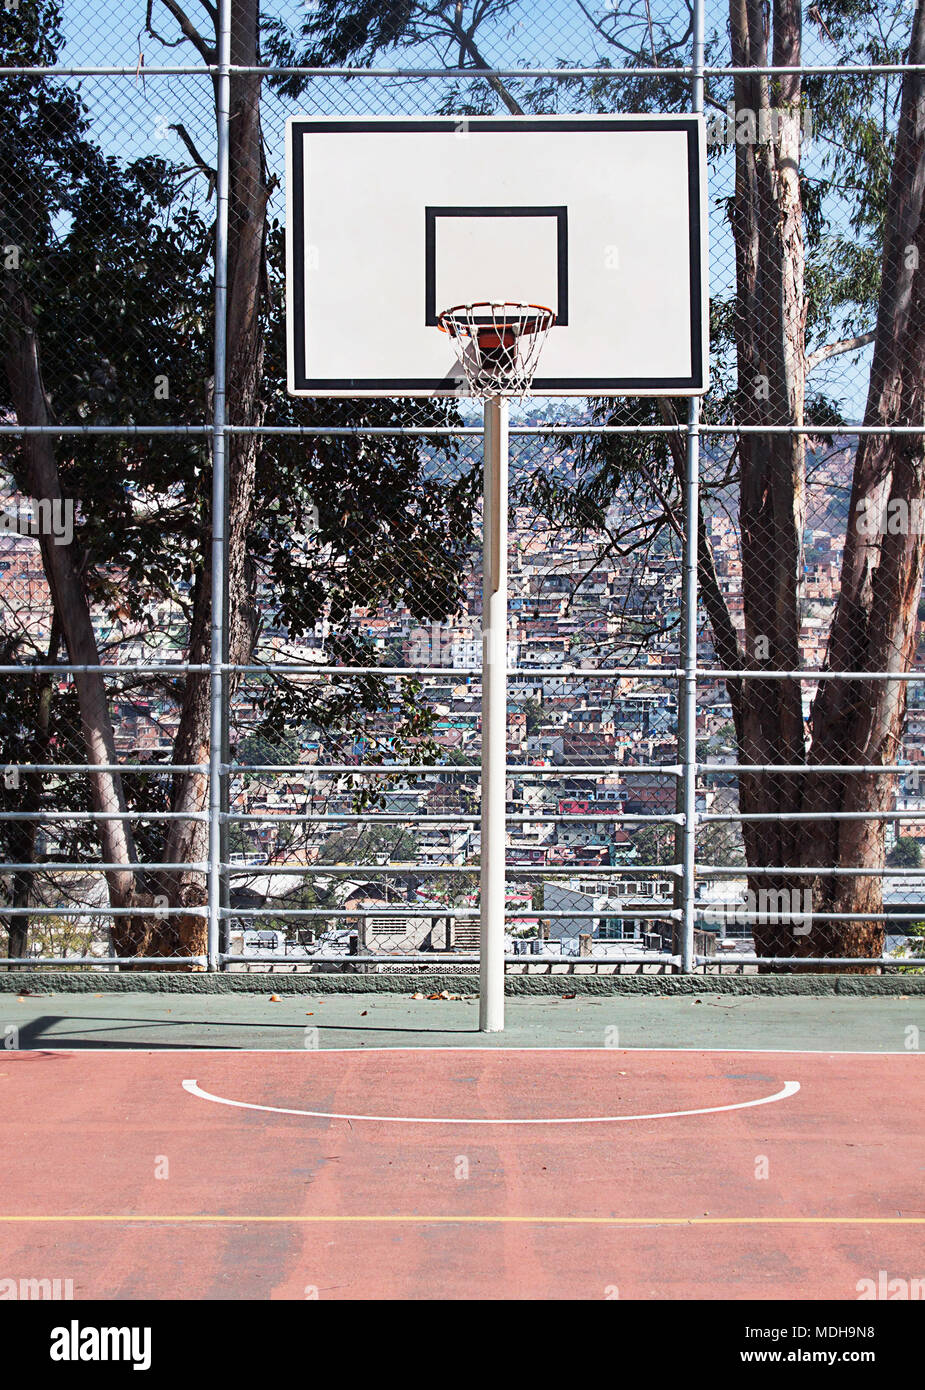 Outdoor Basketballkorb auf einem städtischen Spielplatz im Freien  Stockfotografie - Alamy